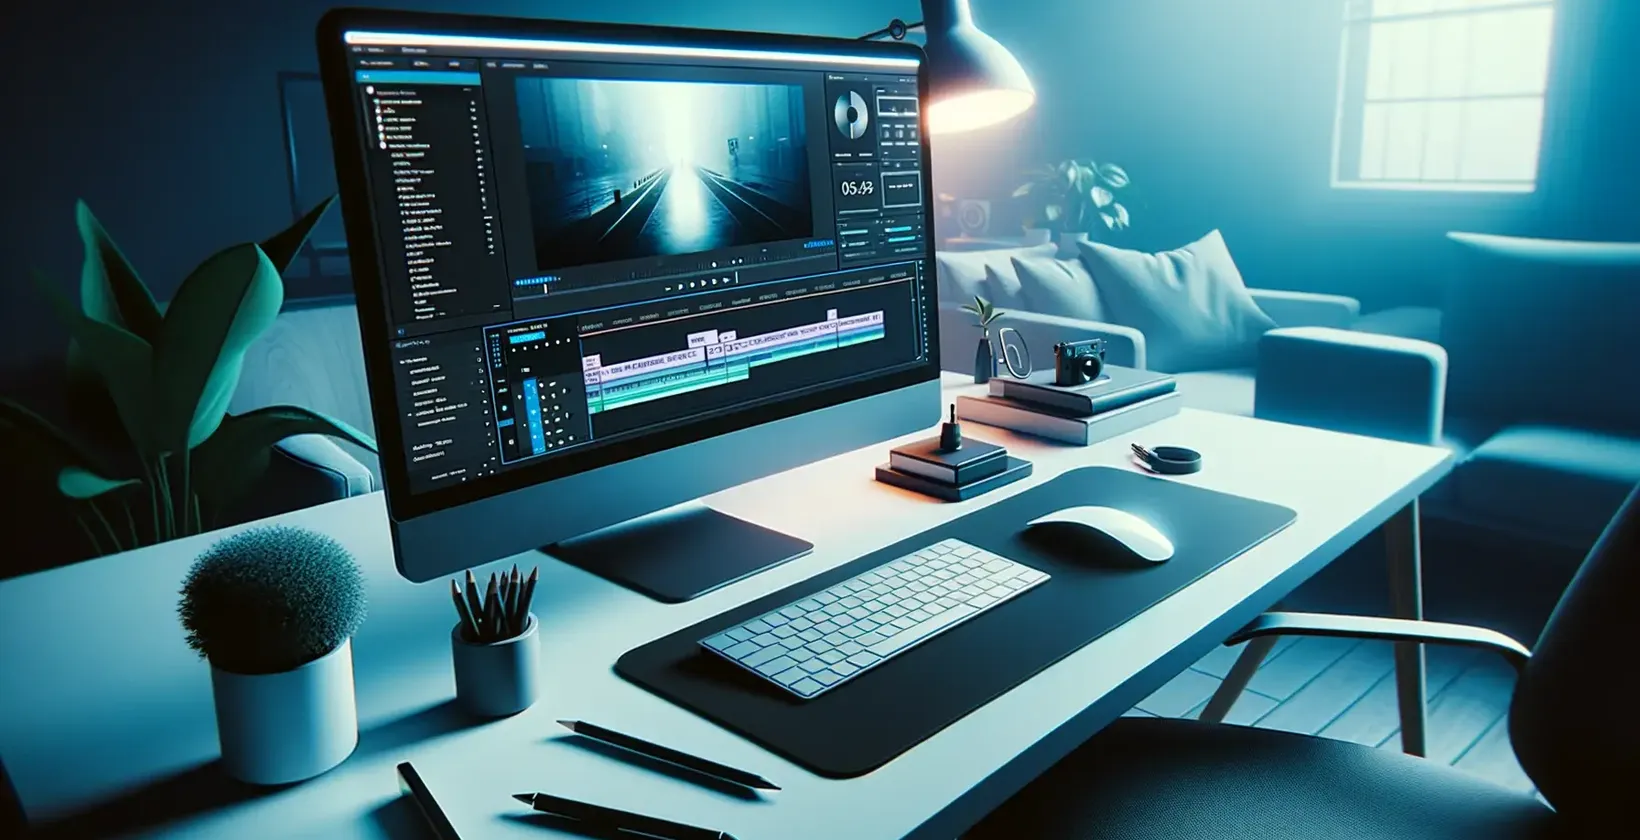 Voeg tekst toe aan video met Adobe After Effects geïllustreerd door een slanke bewerkingswerkruimte met blauw licht